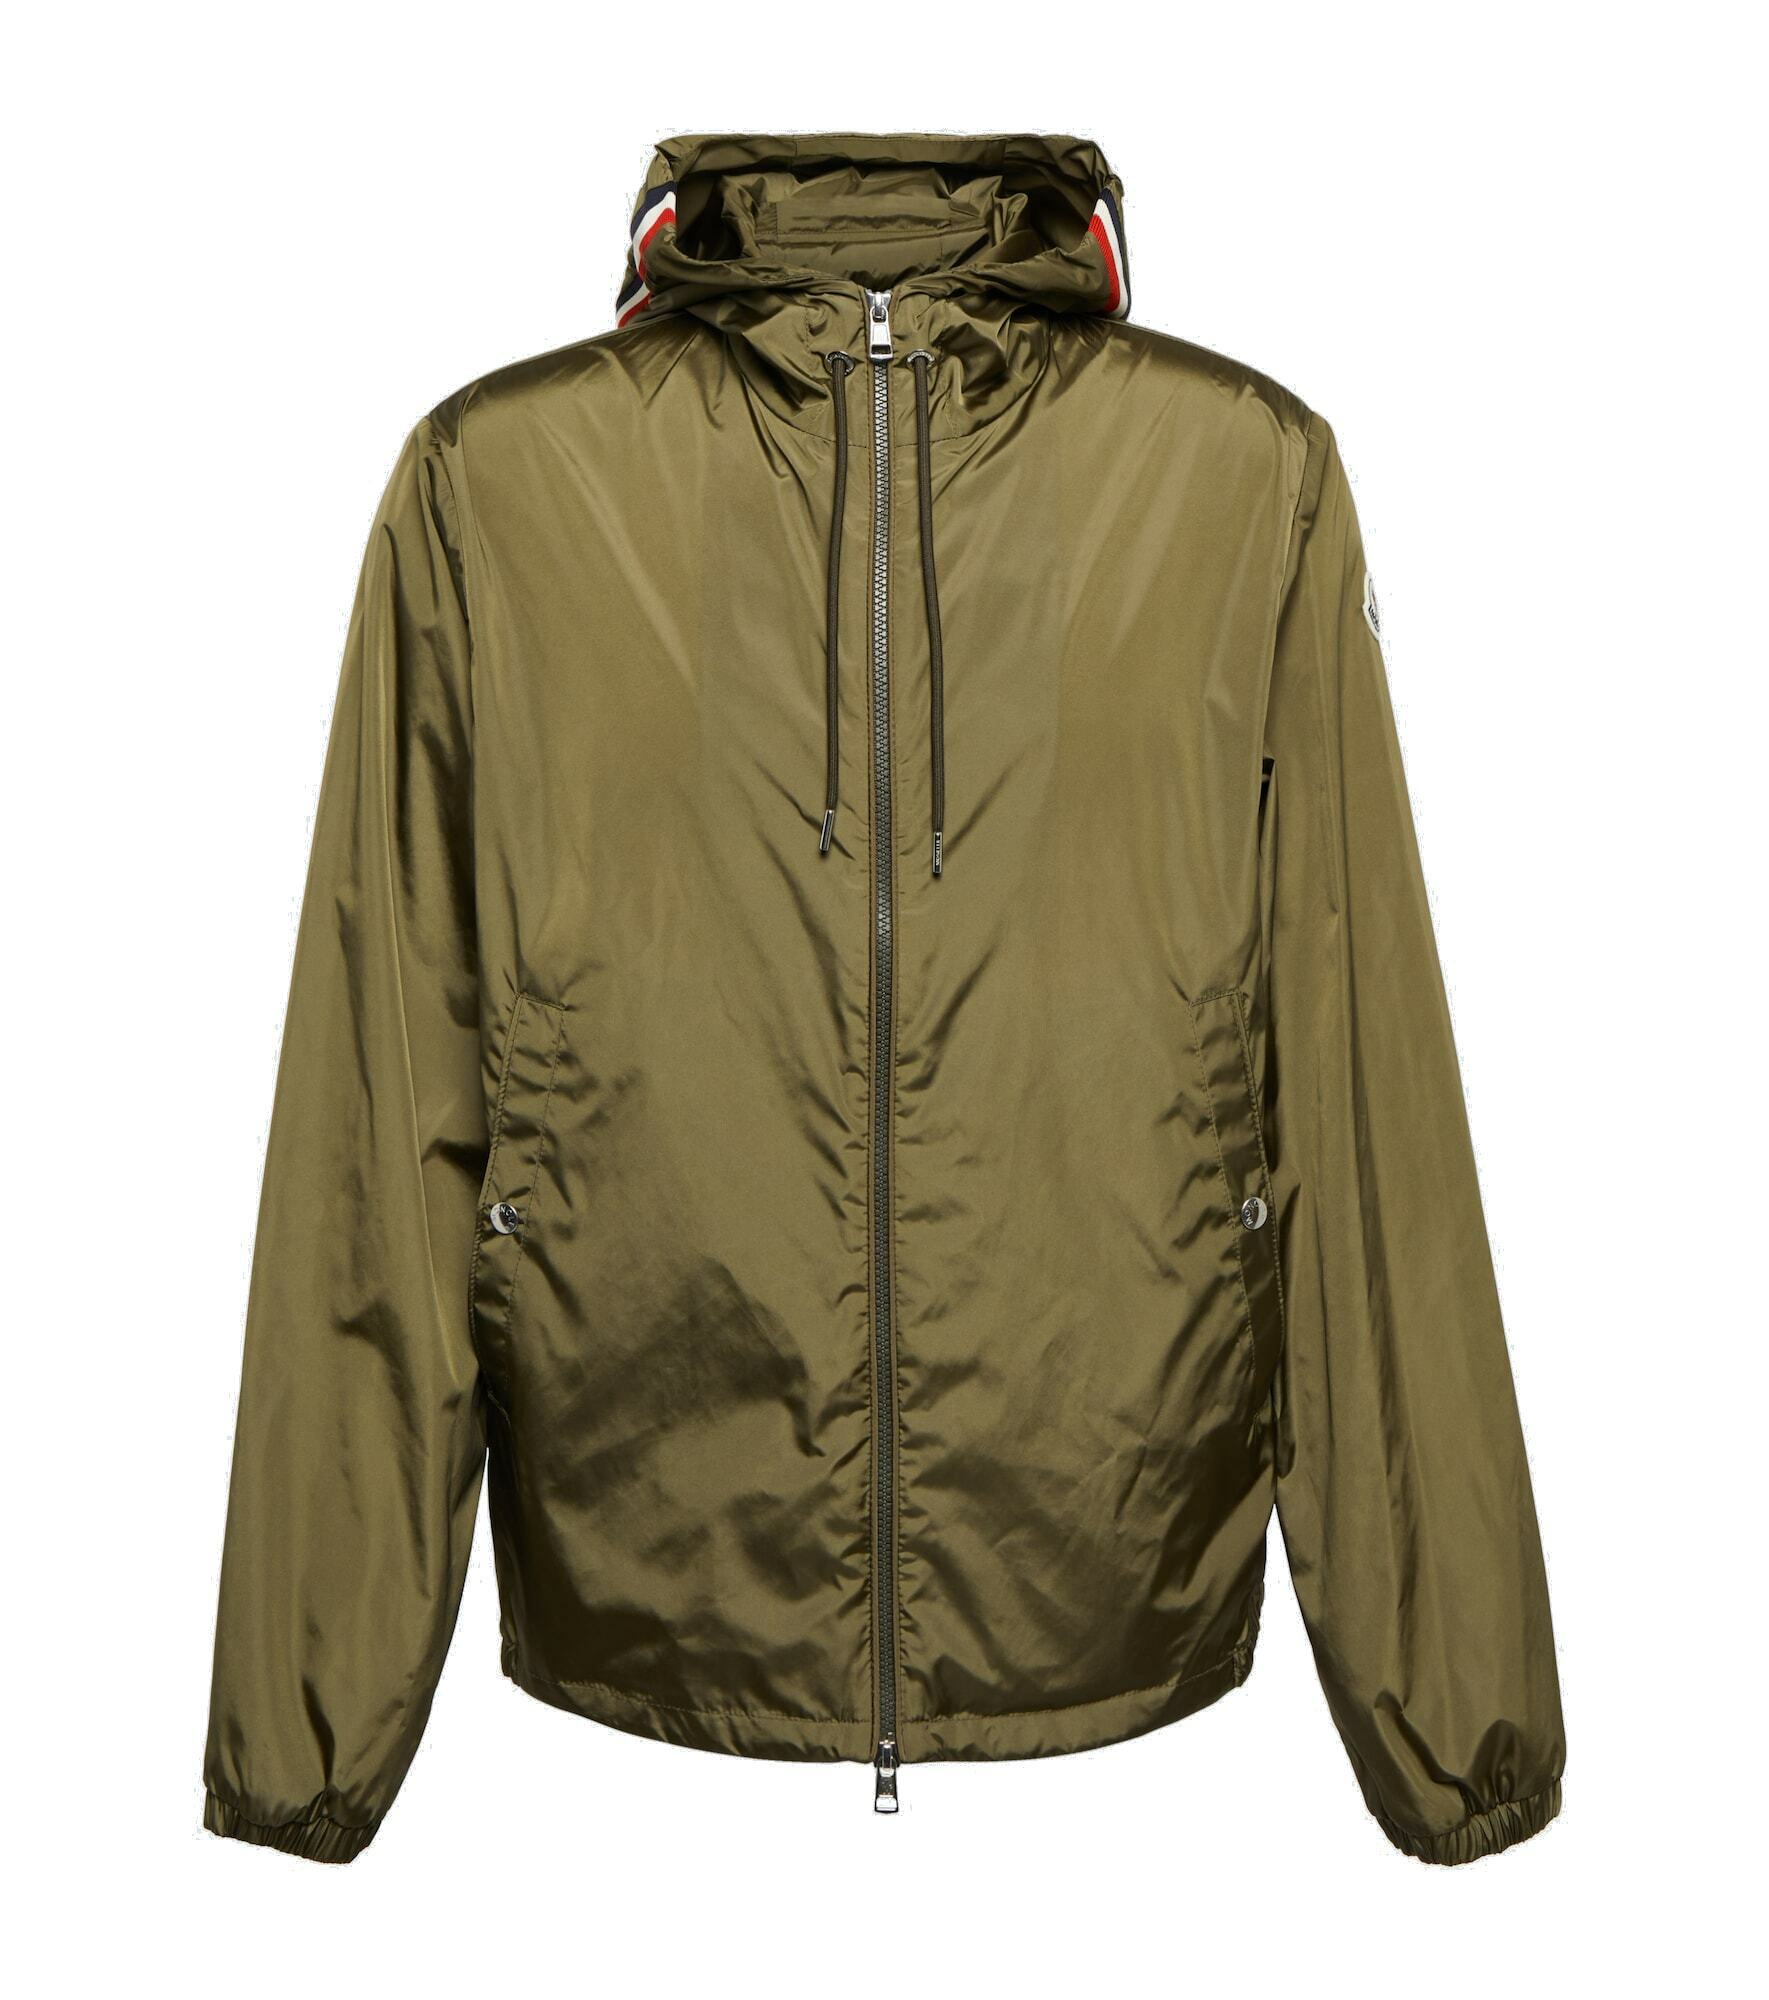 Moncler - Grimpeurs jacket Moncler